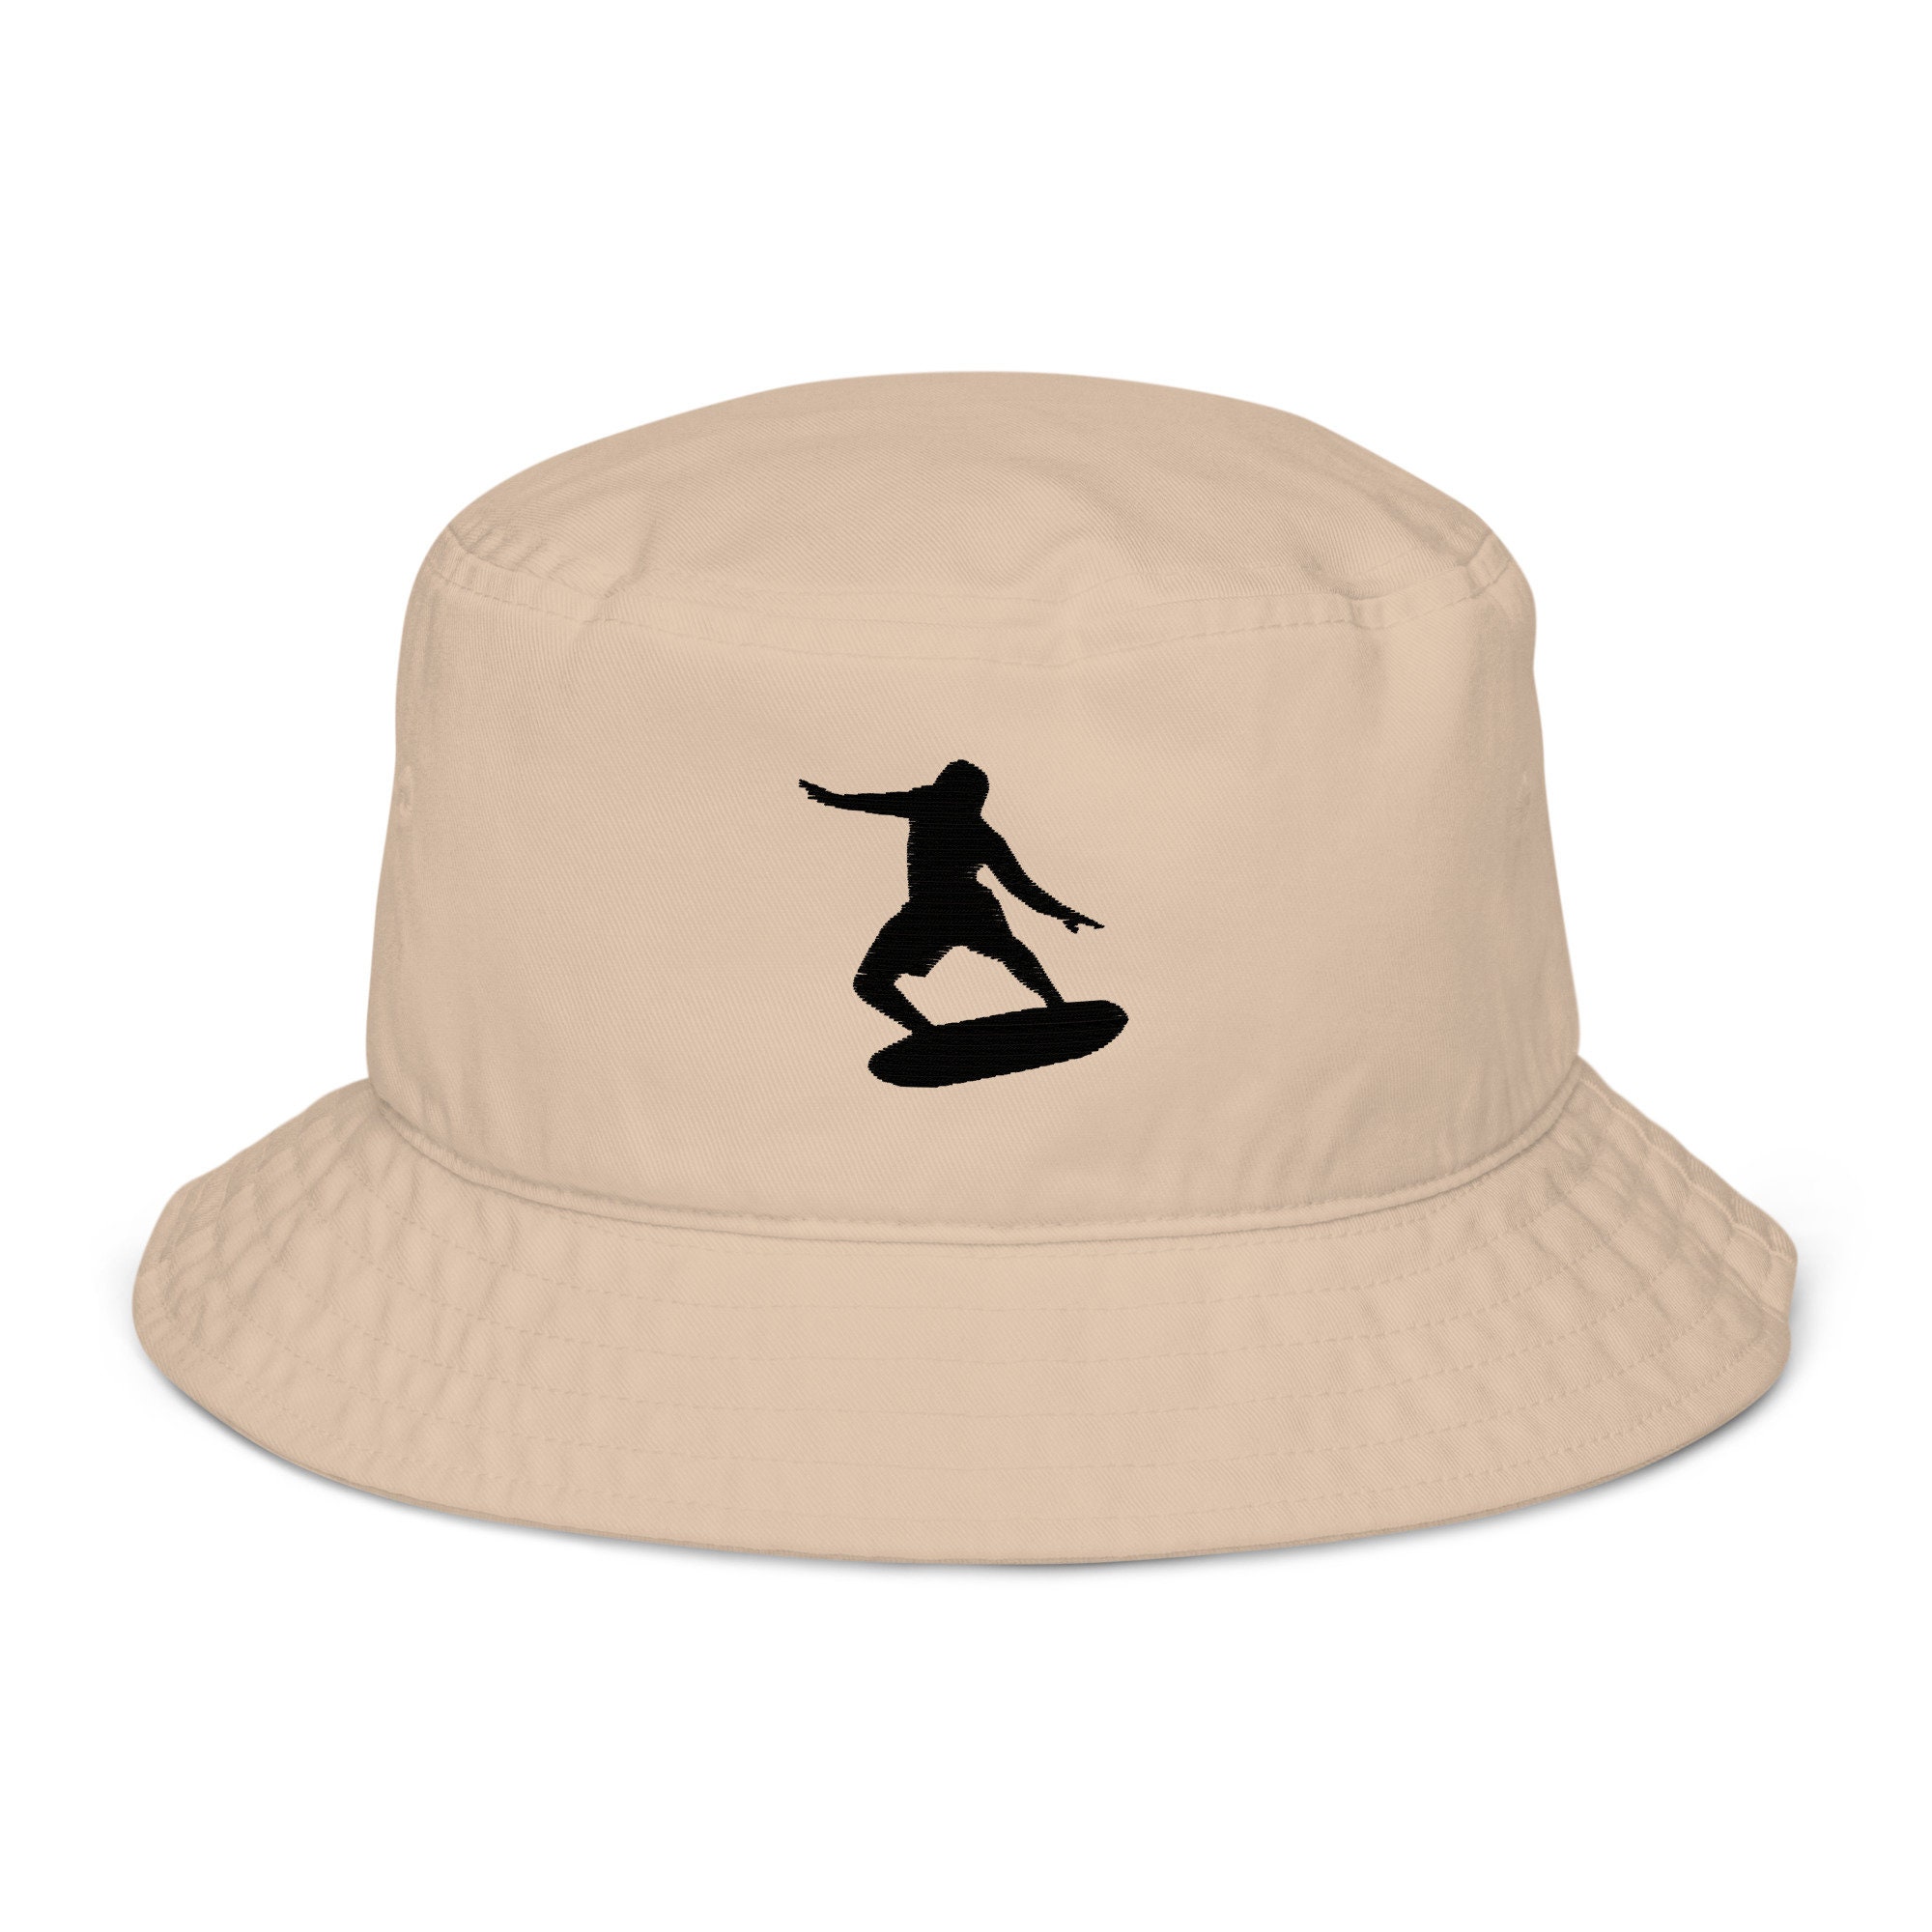 Surfing Bucket Hat, Surfing Hats for Men, Surf Hat, Embroidered unisex Organic Cotton Bucket Hat, Design 1.